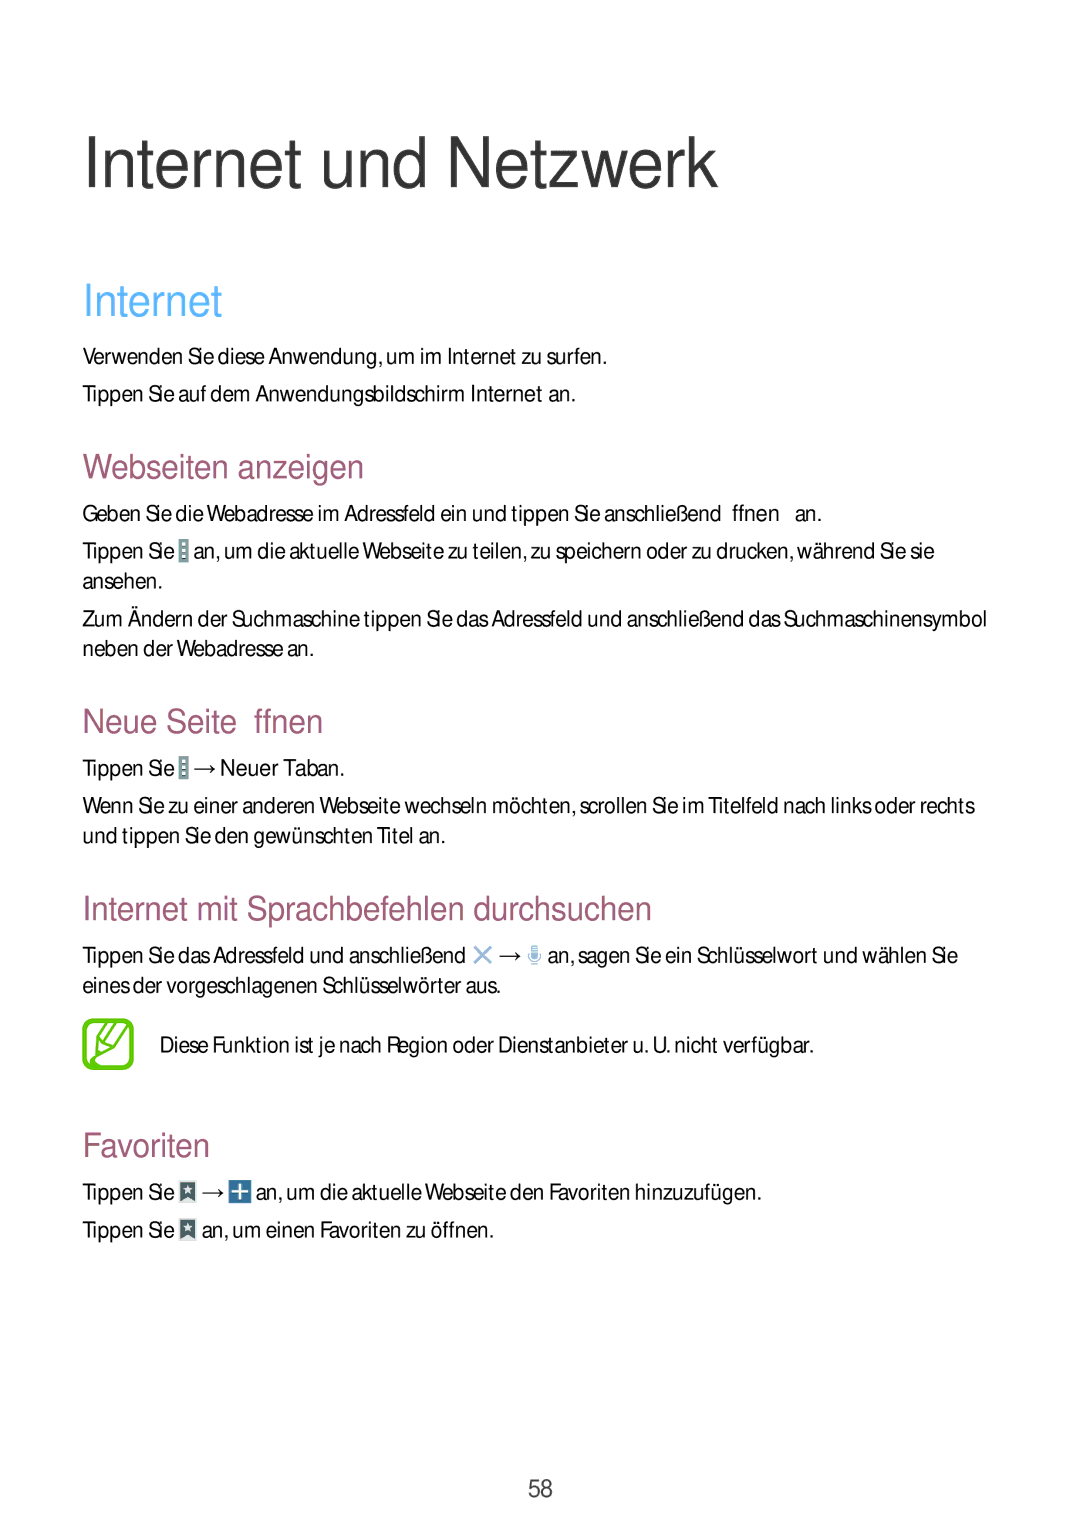 Samsung SM-T9000ZKADBT manual Webseiten anzeigen, Neue Seite öffnen, Internet mit Sprachbefehlen durchsuchen, Favoriten 